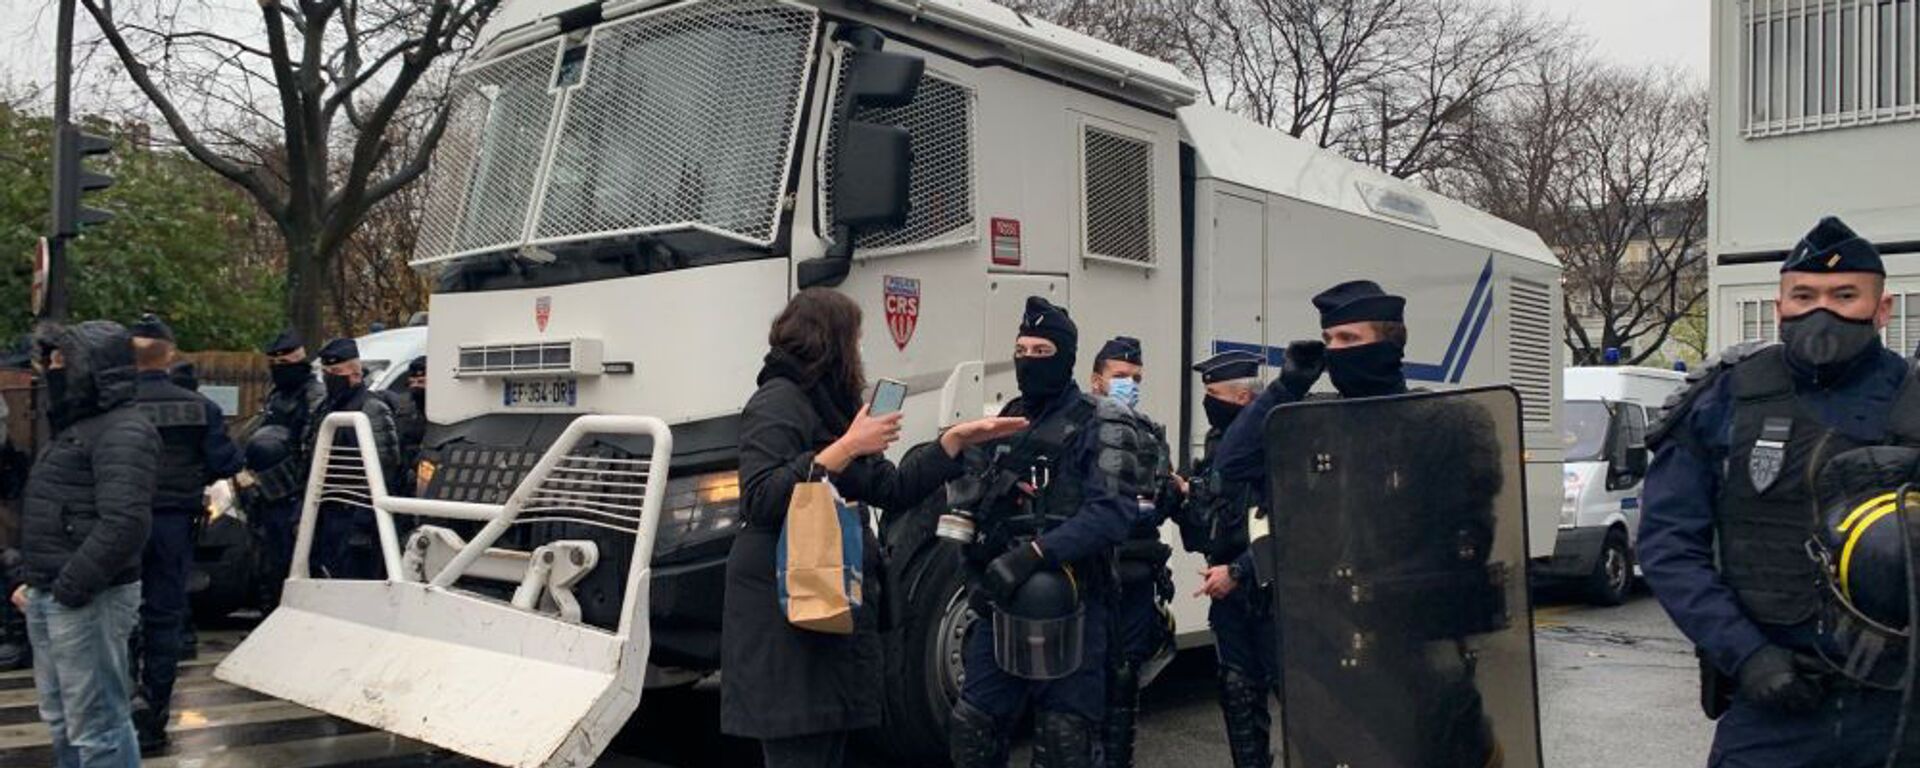 Полицейские во время демонстрации против законопроекта о глобальной безопасности (12 декабря 2020). Париж - Sputnik Армения, 1920, 01.05.2021